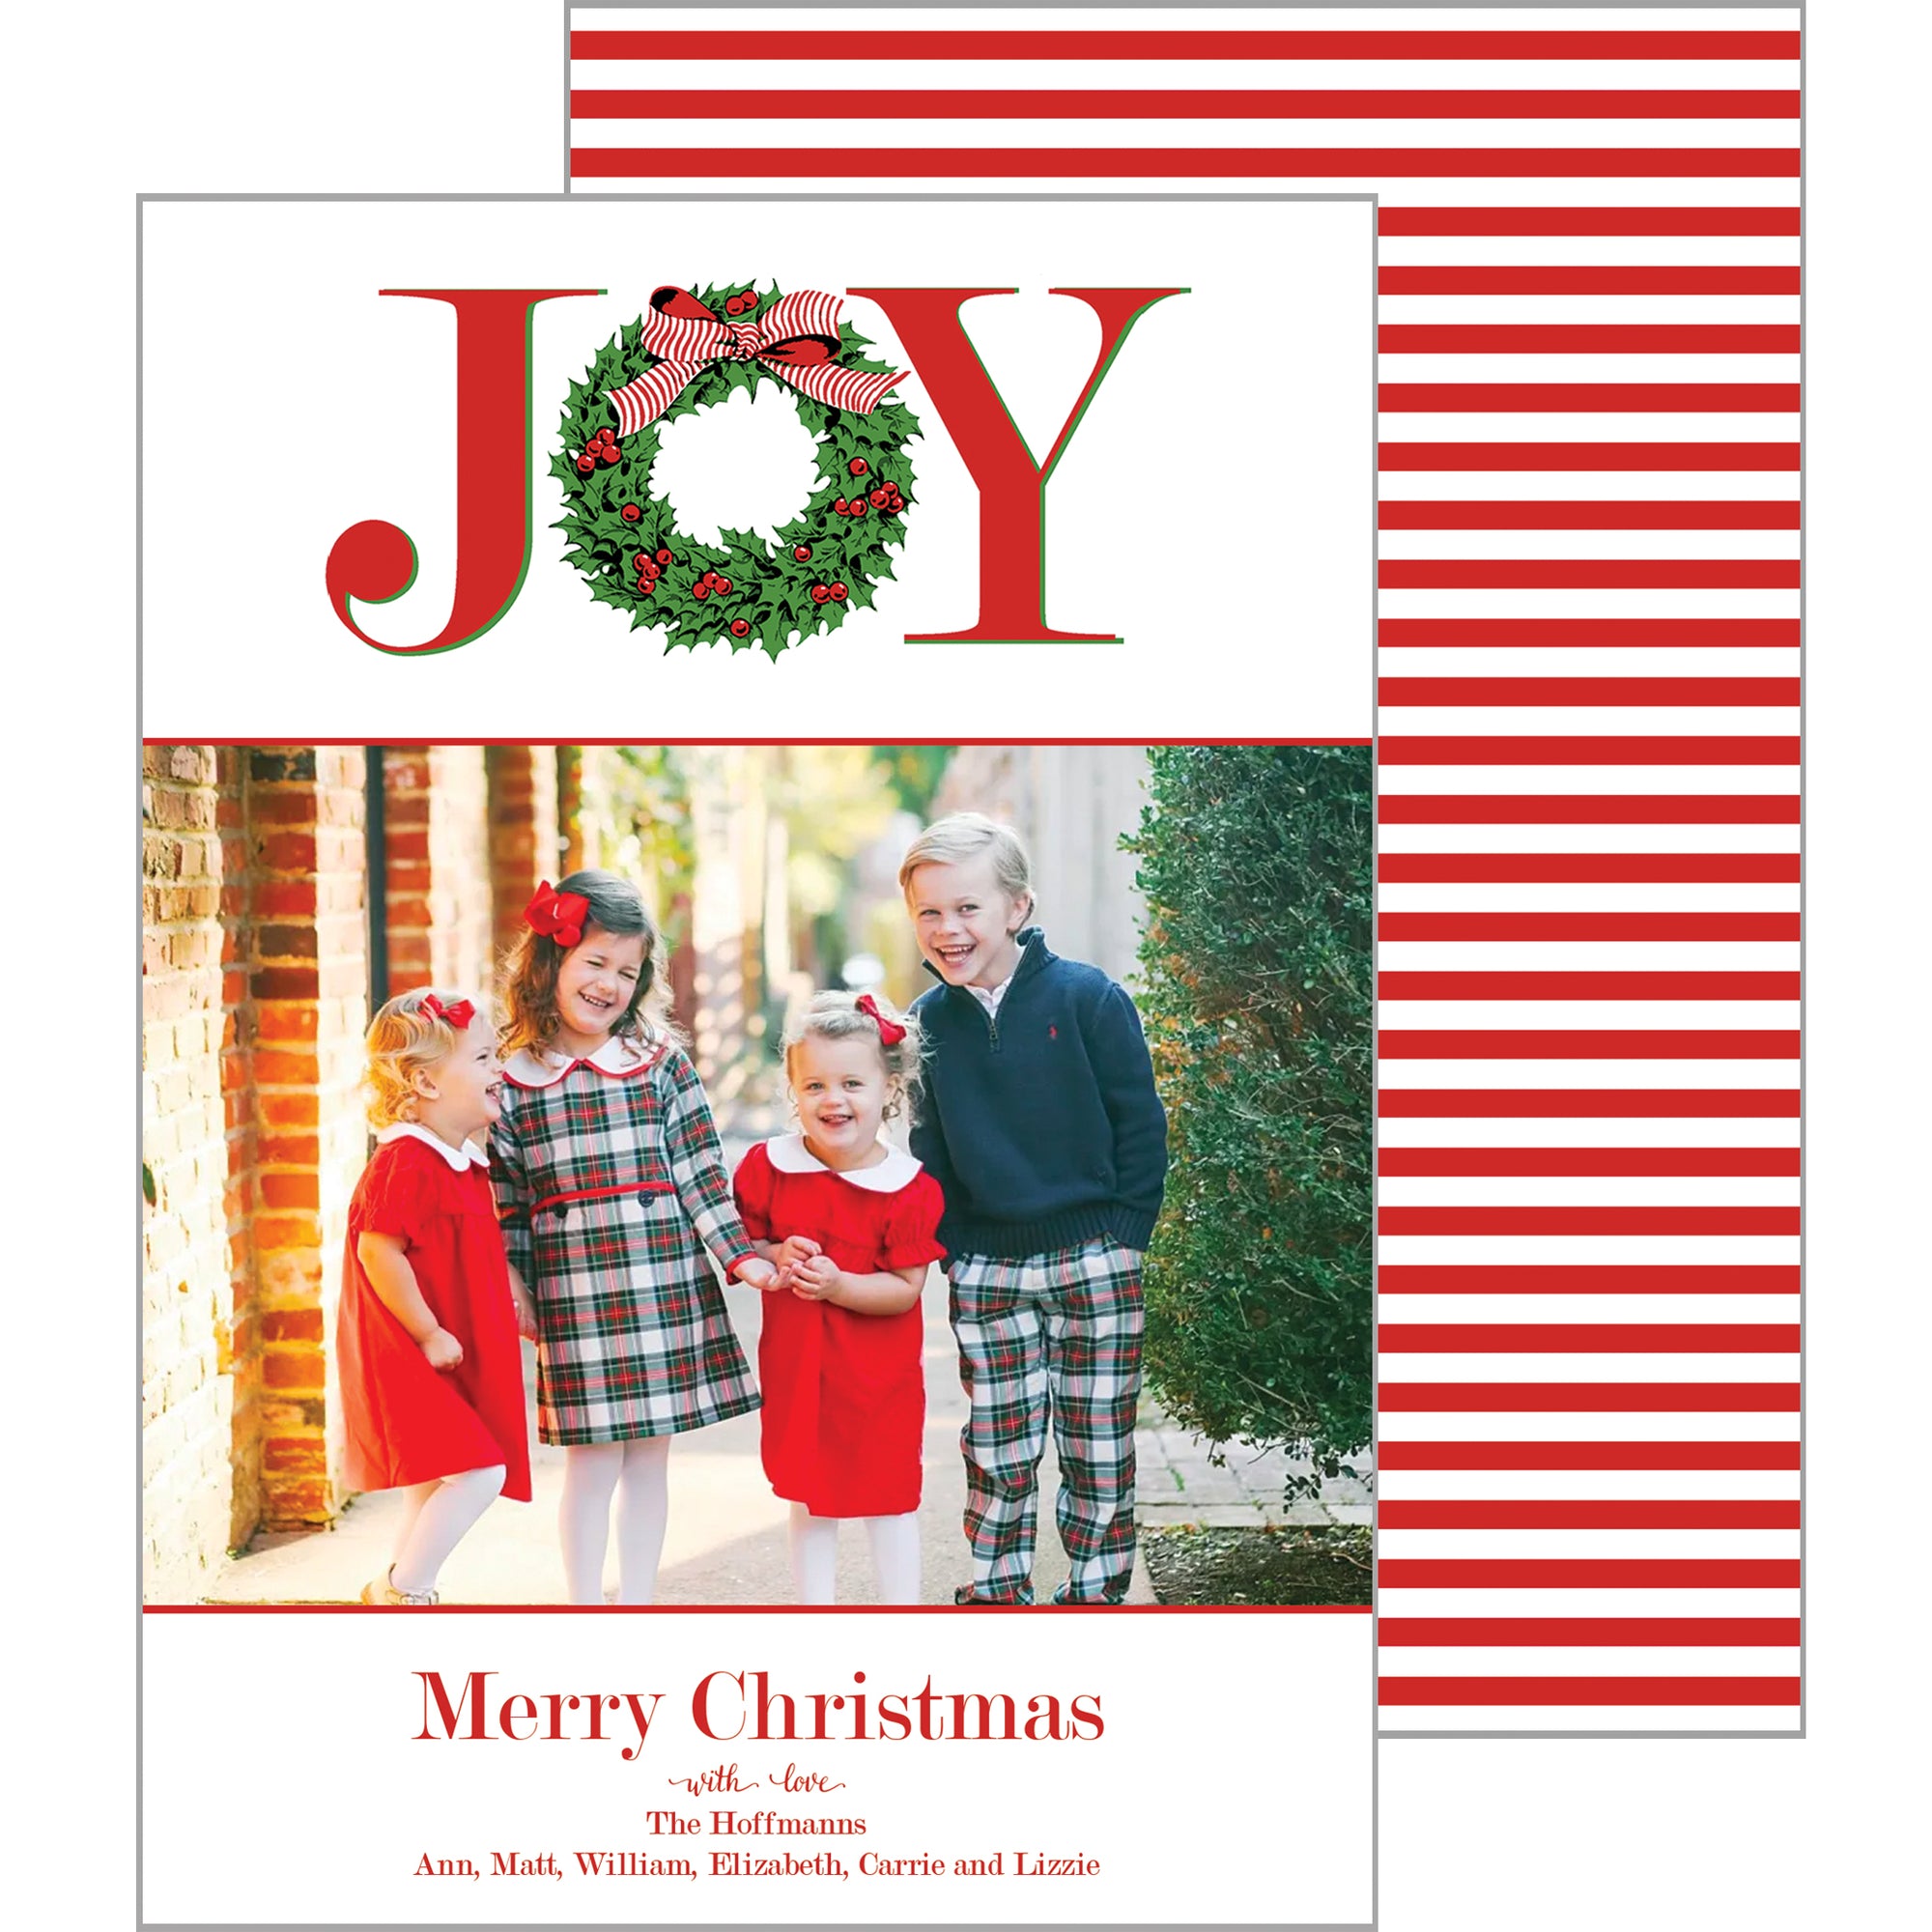 JOY Holly Wreath Photo Card